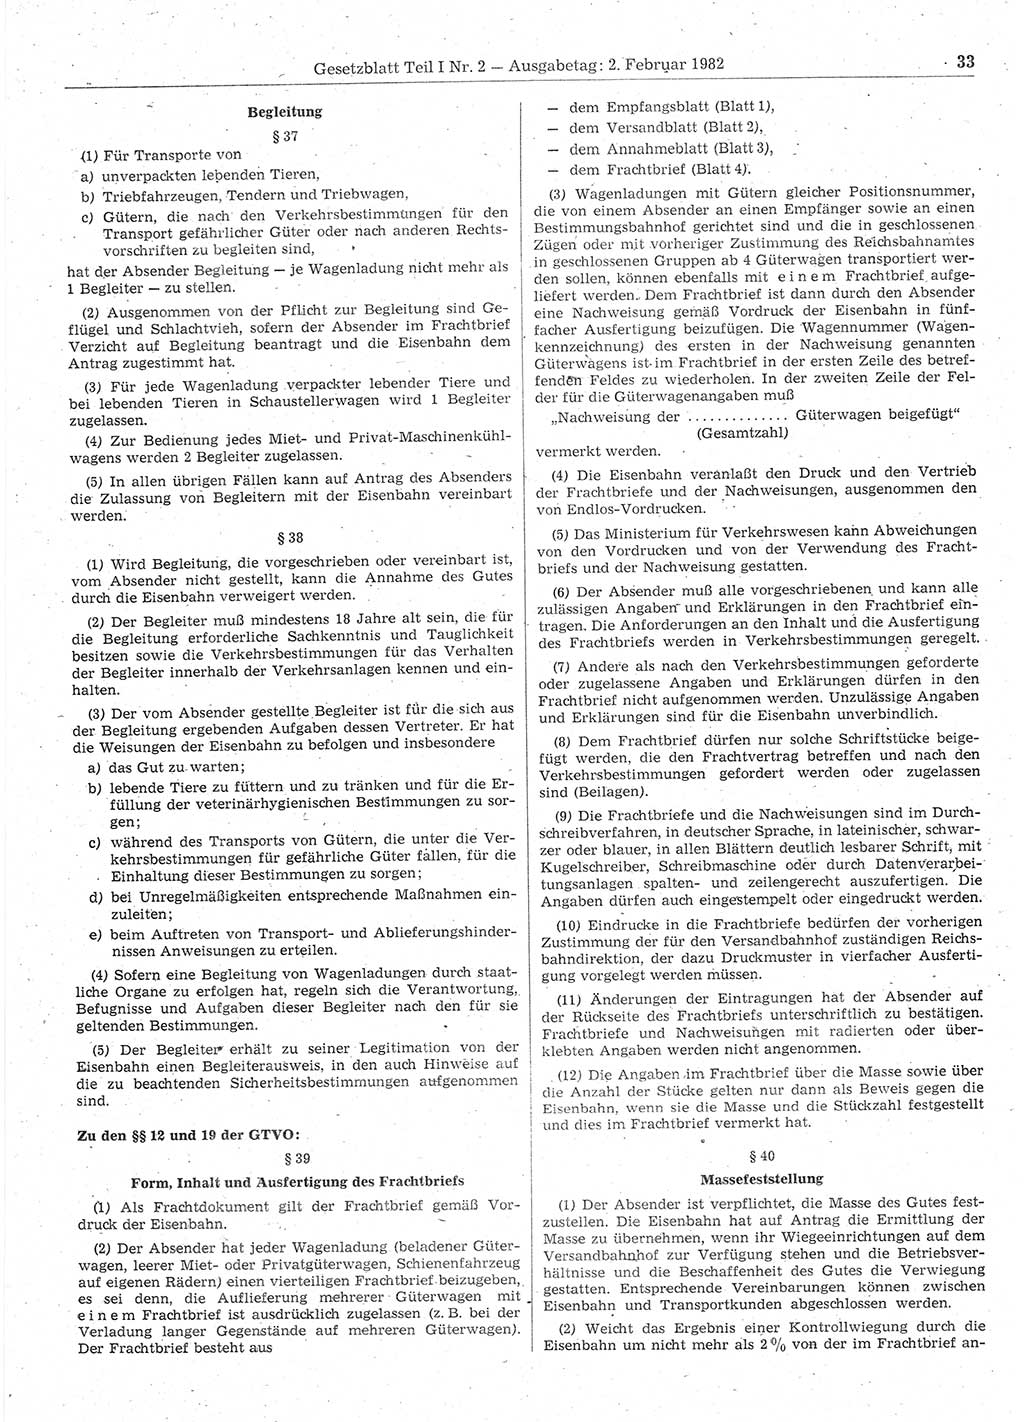 Gesetzblatt (GBl.) der Deutschen Demokratischen Republik (DDR) Teil Ⅰ 1982, Seite 33 (GBl. DDR Ⅰ 1982, S. 33)